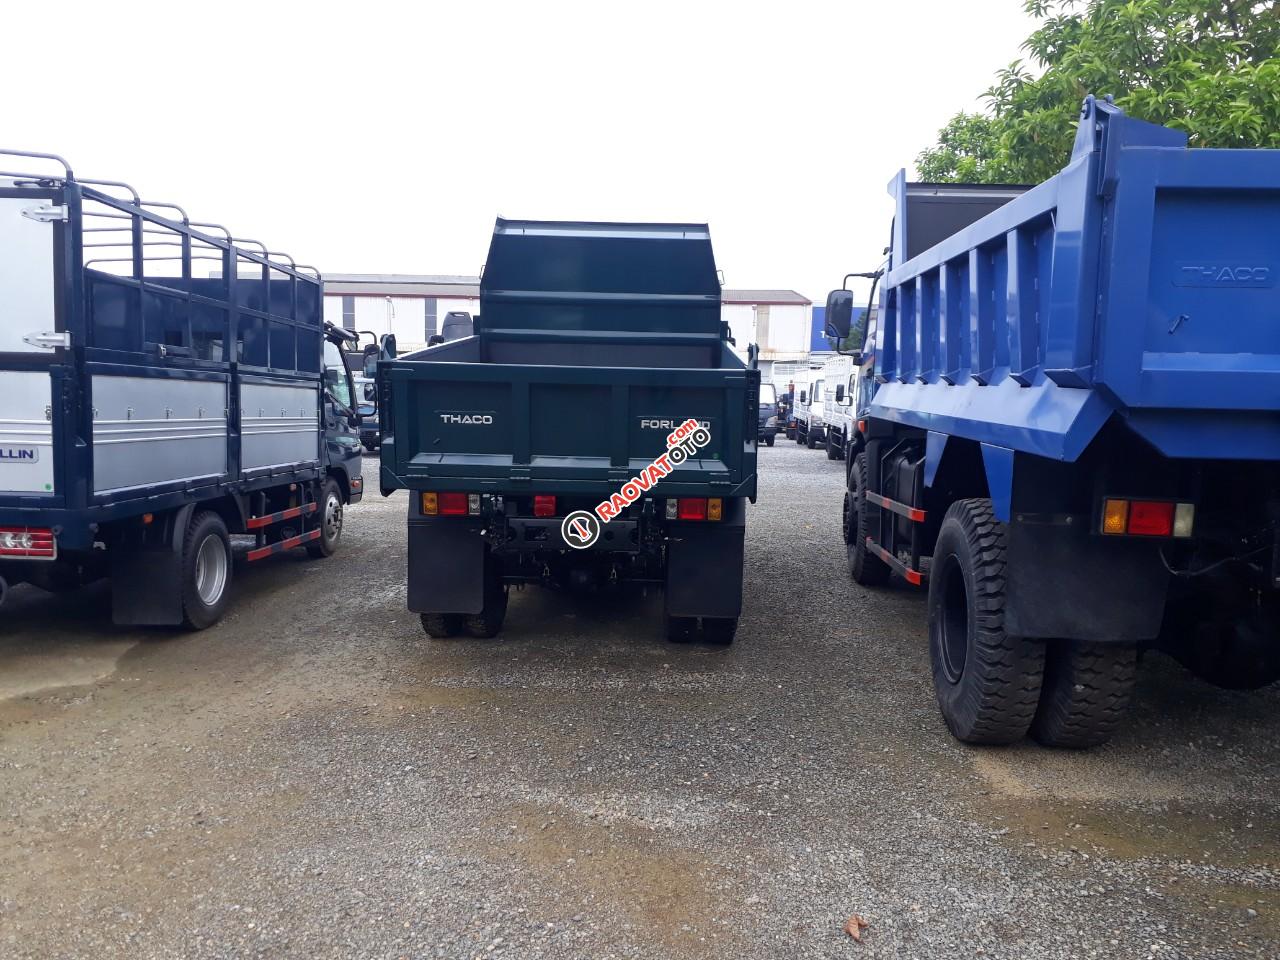 Bán xe tải Ben Thaco FD345. E4 tải trọng 3.49 tấn Trường Hải ở Hà Nội. LH: 098.253.6148-3